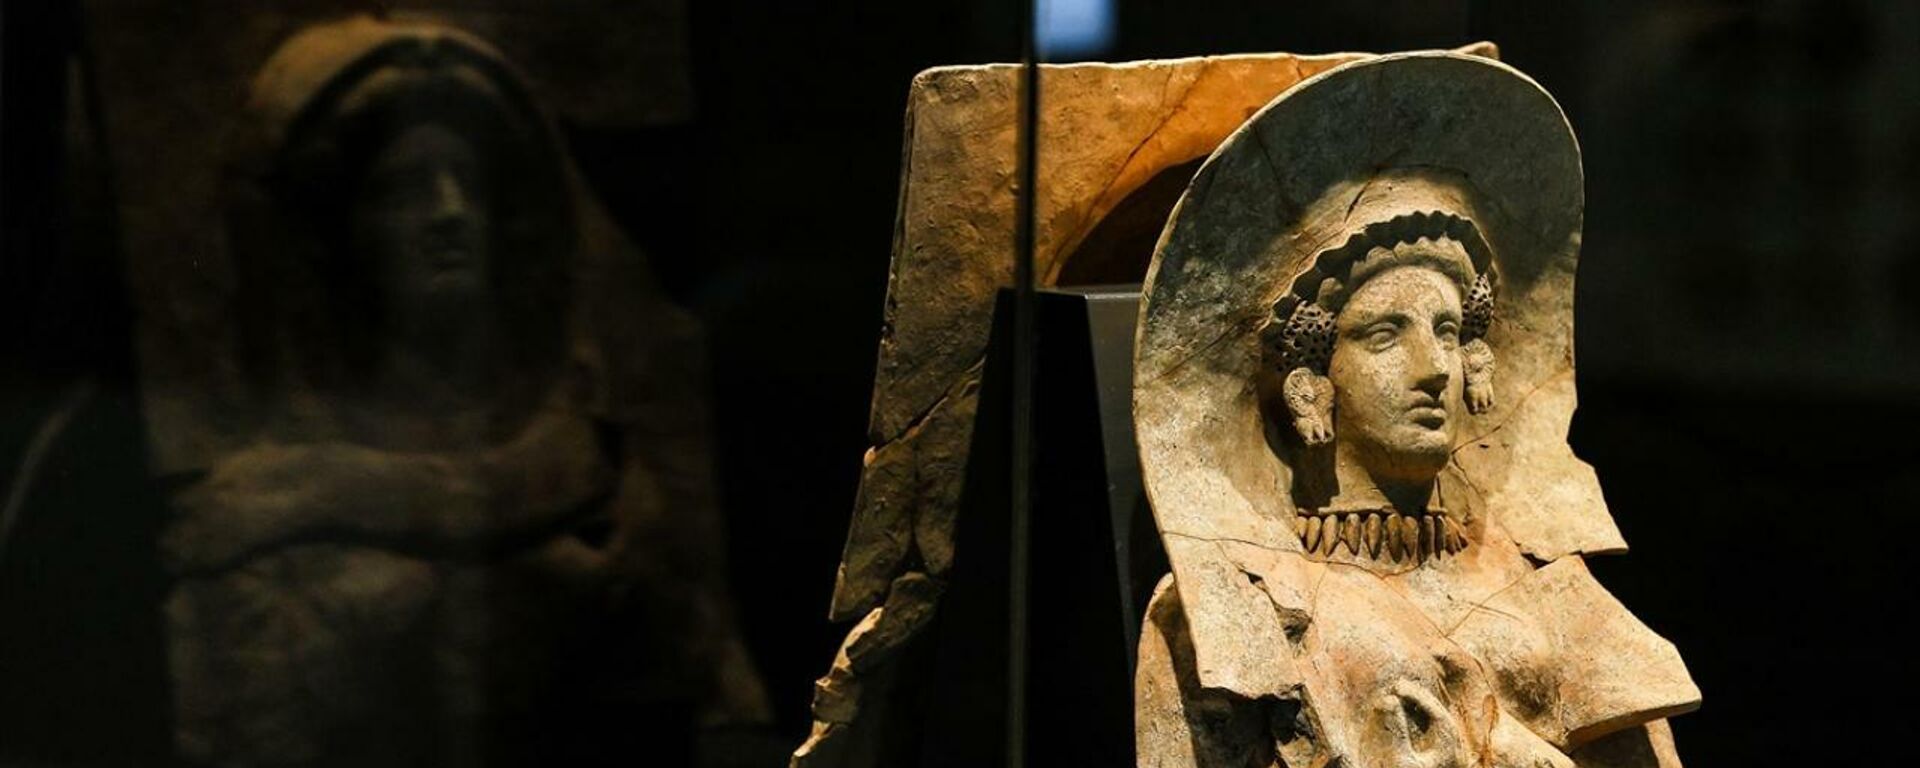 İyon savaşçıların mezarında 2500 yıllık masklar  - Sputnik Türkiye, 1920, 05.11.2021